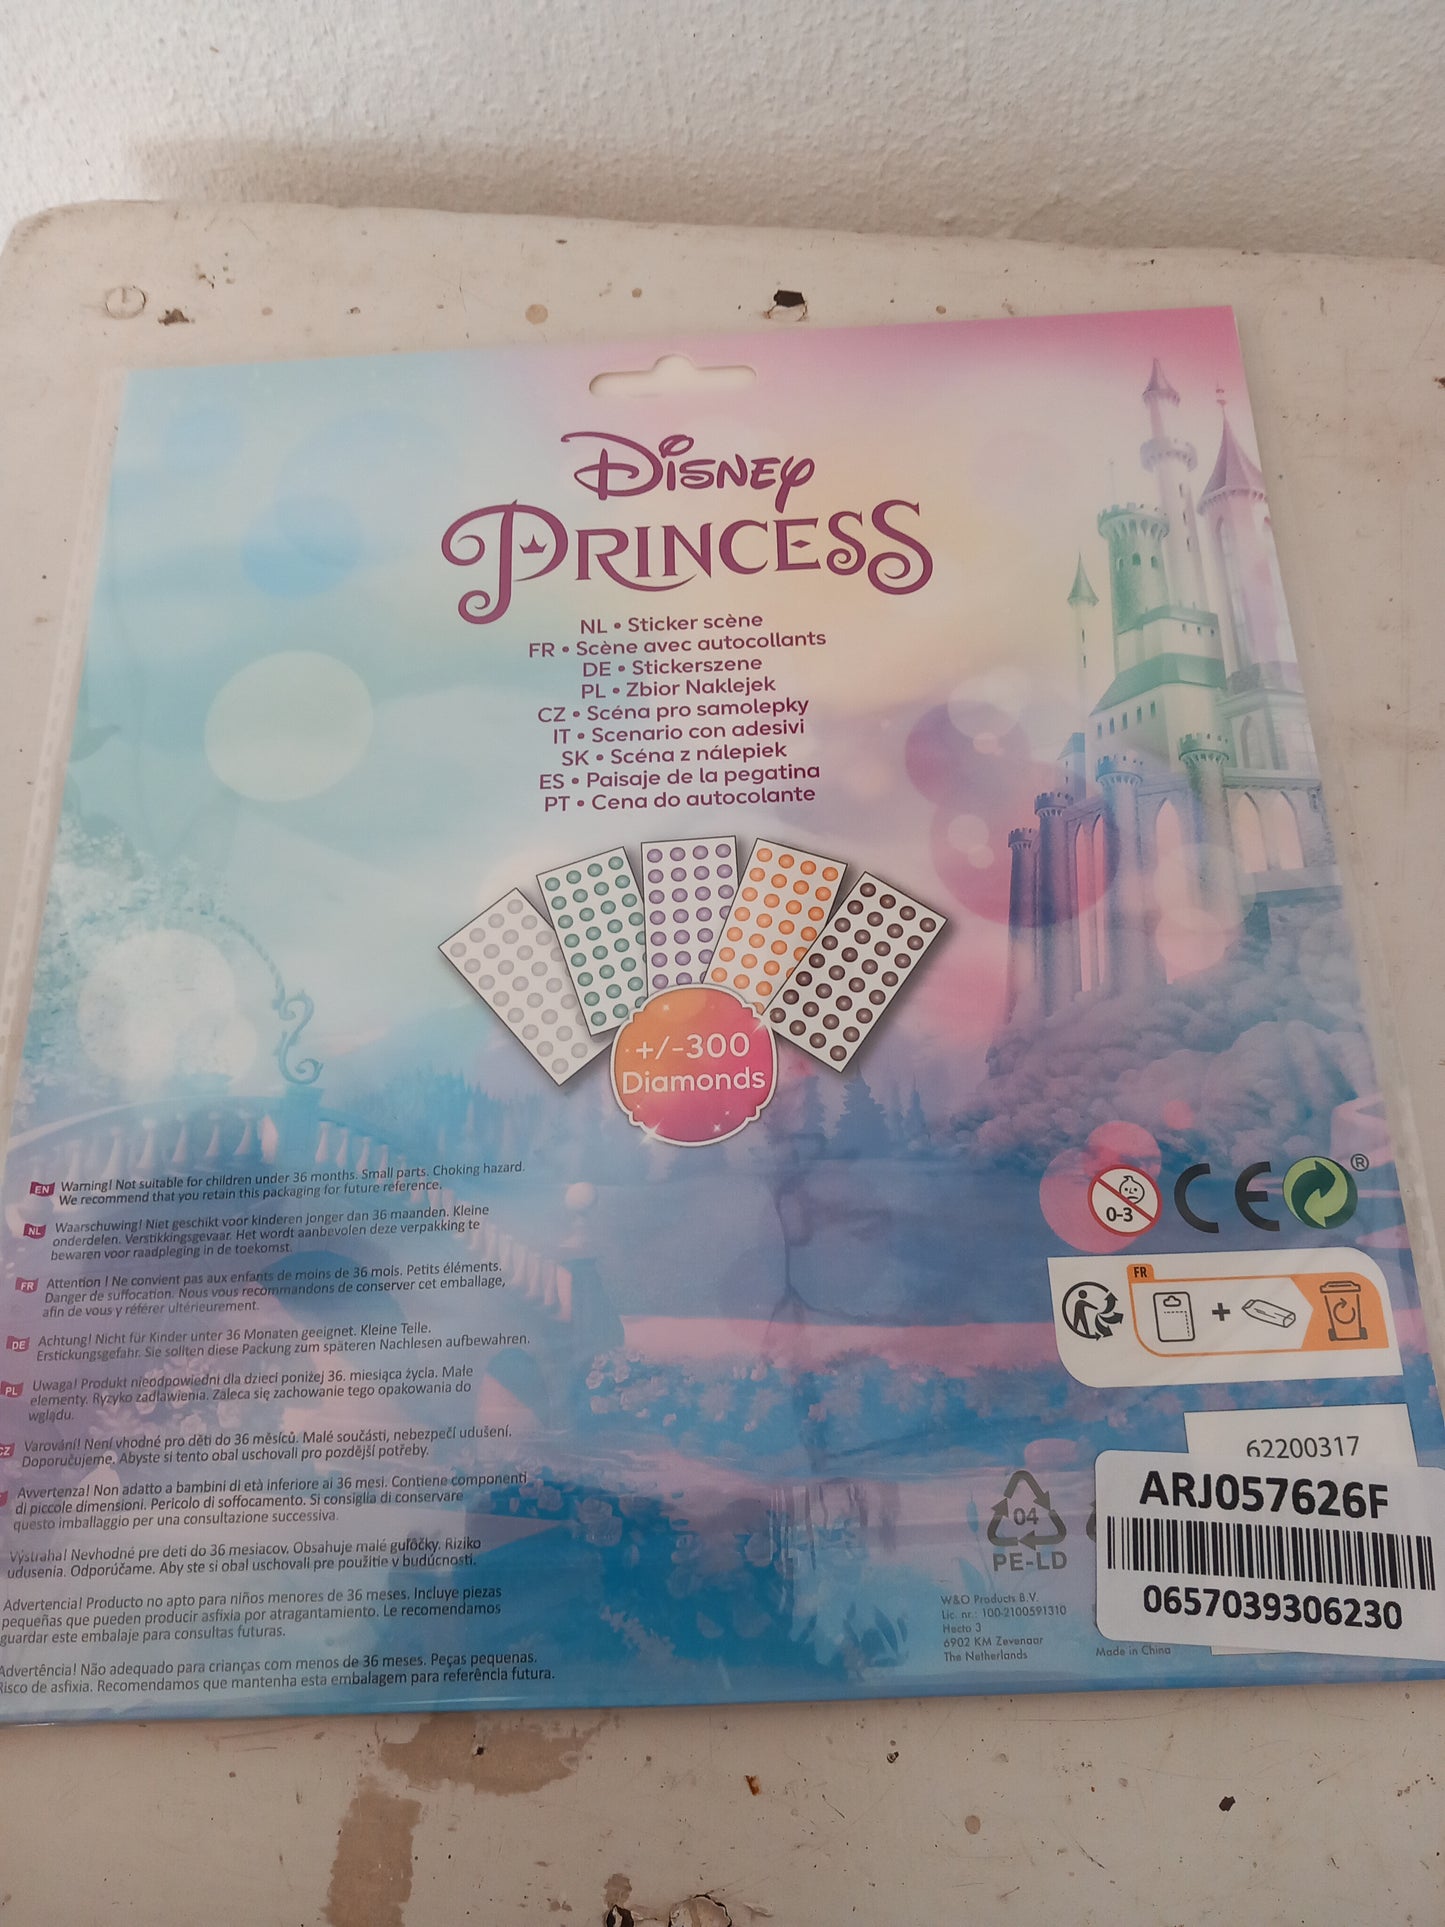 Stickers scene with diamond, Disney Princess